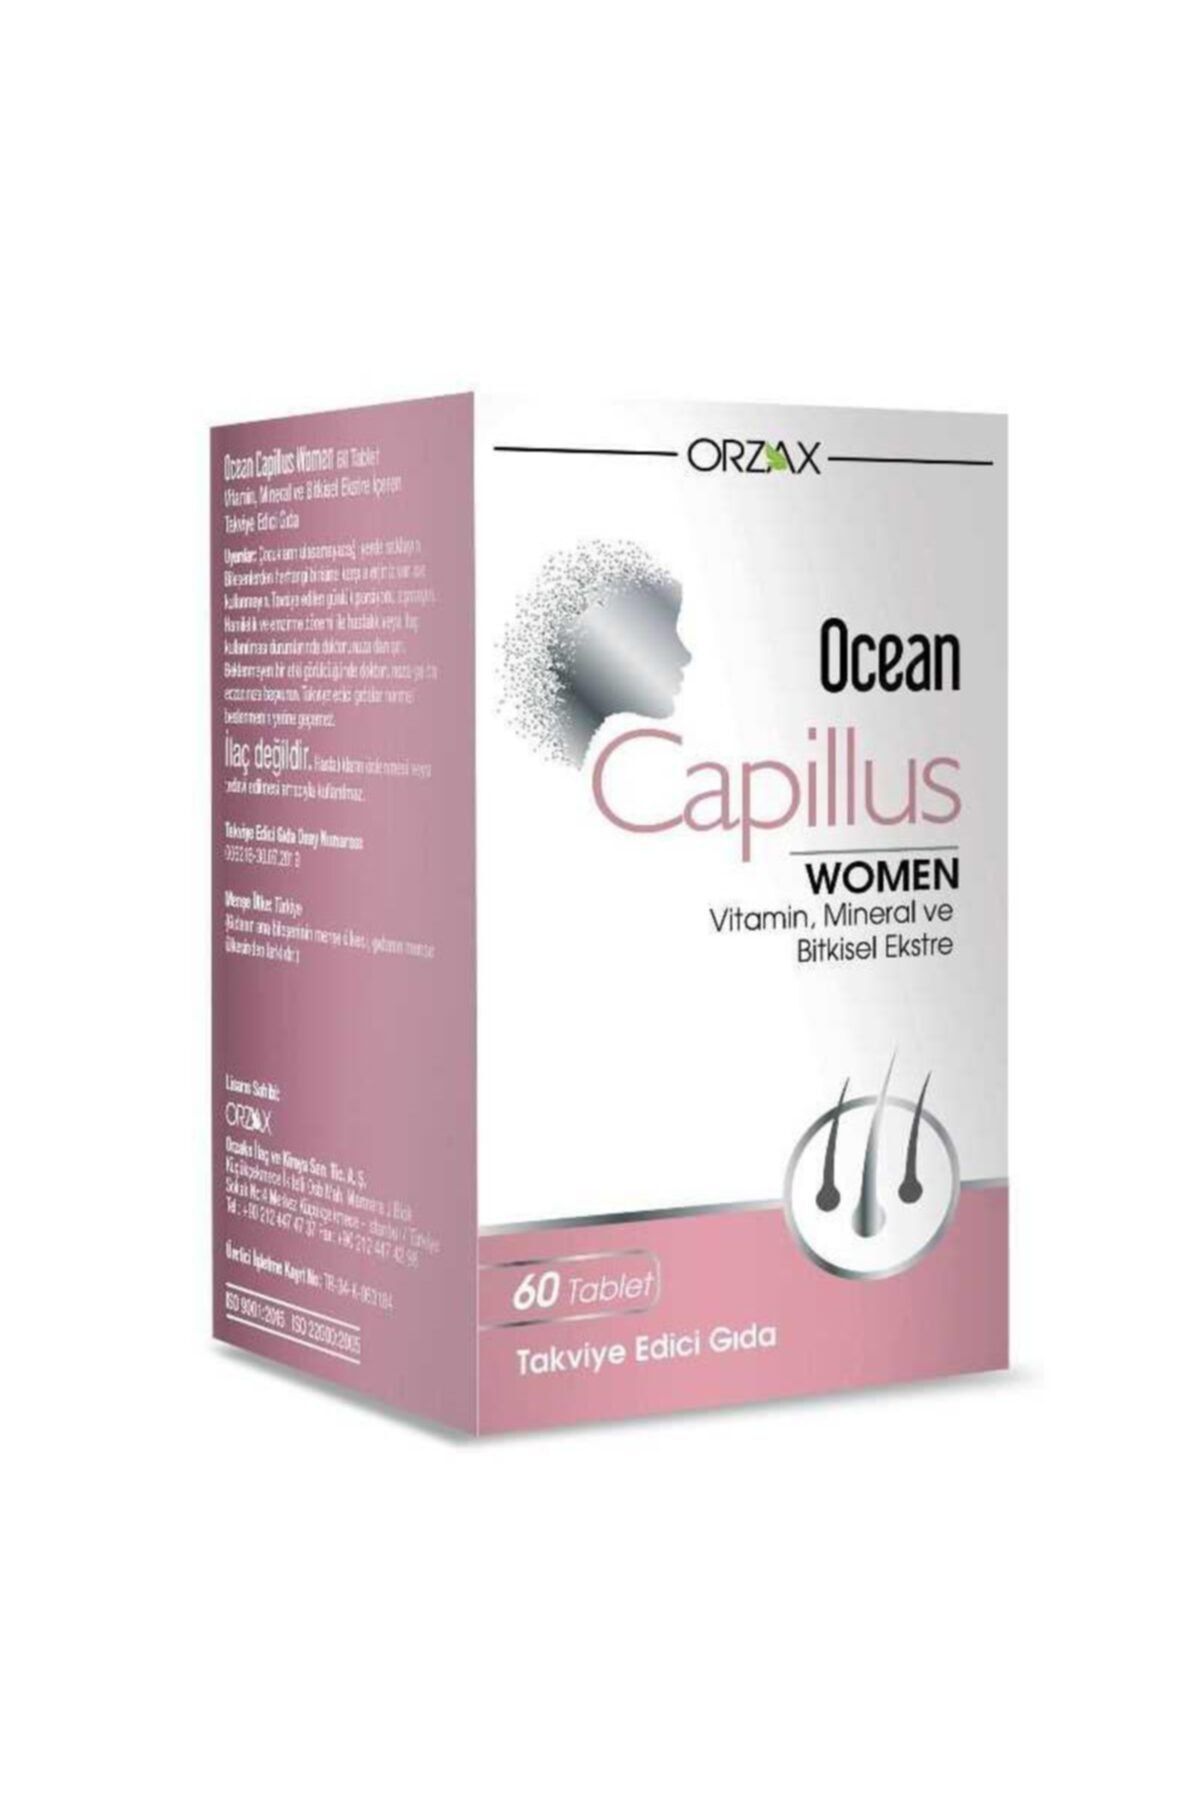 Ocean Orzax Ocean Capillus Women 60 Tablet